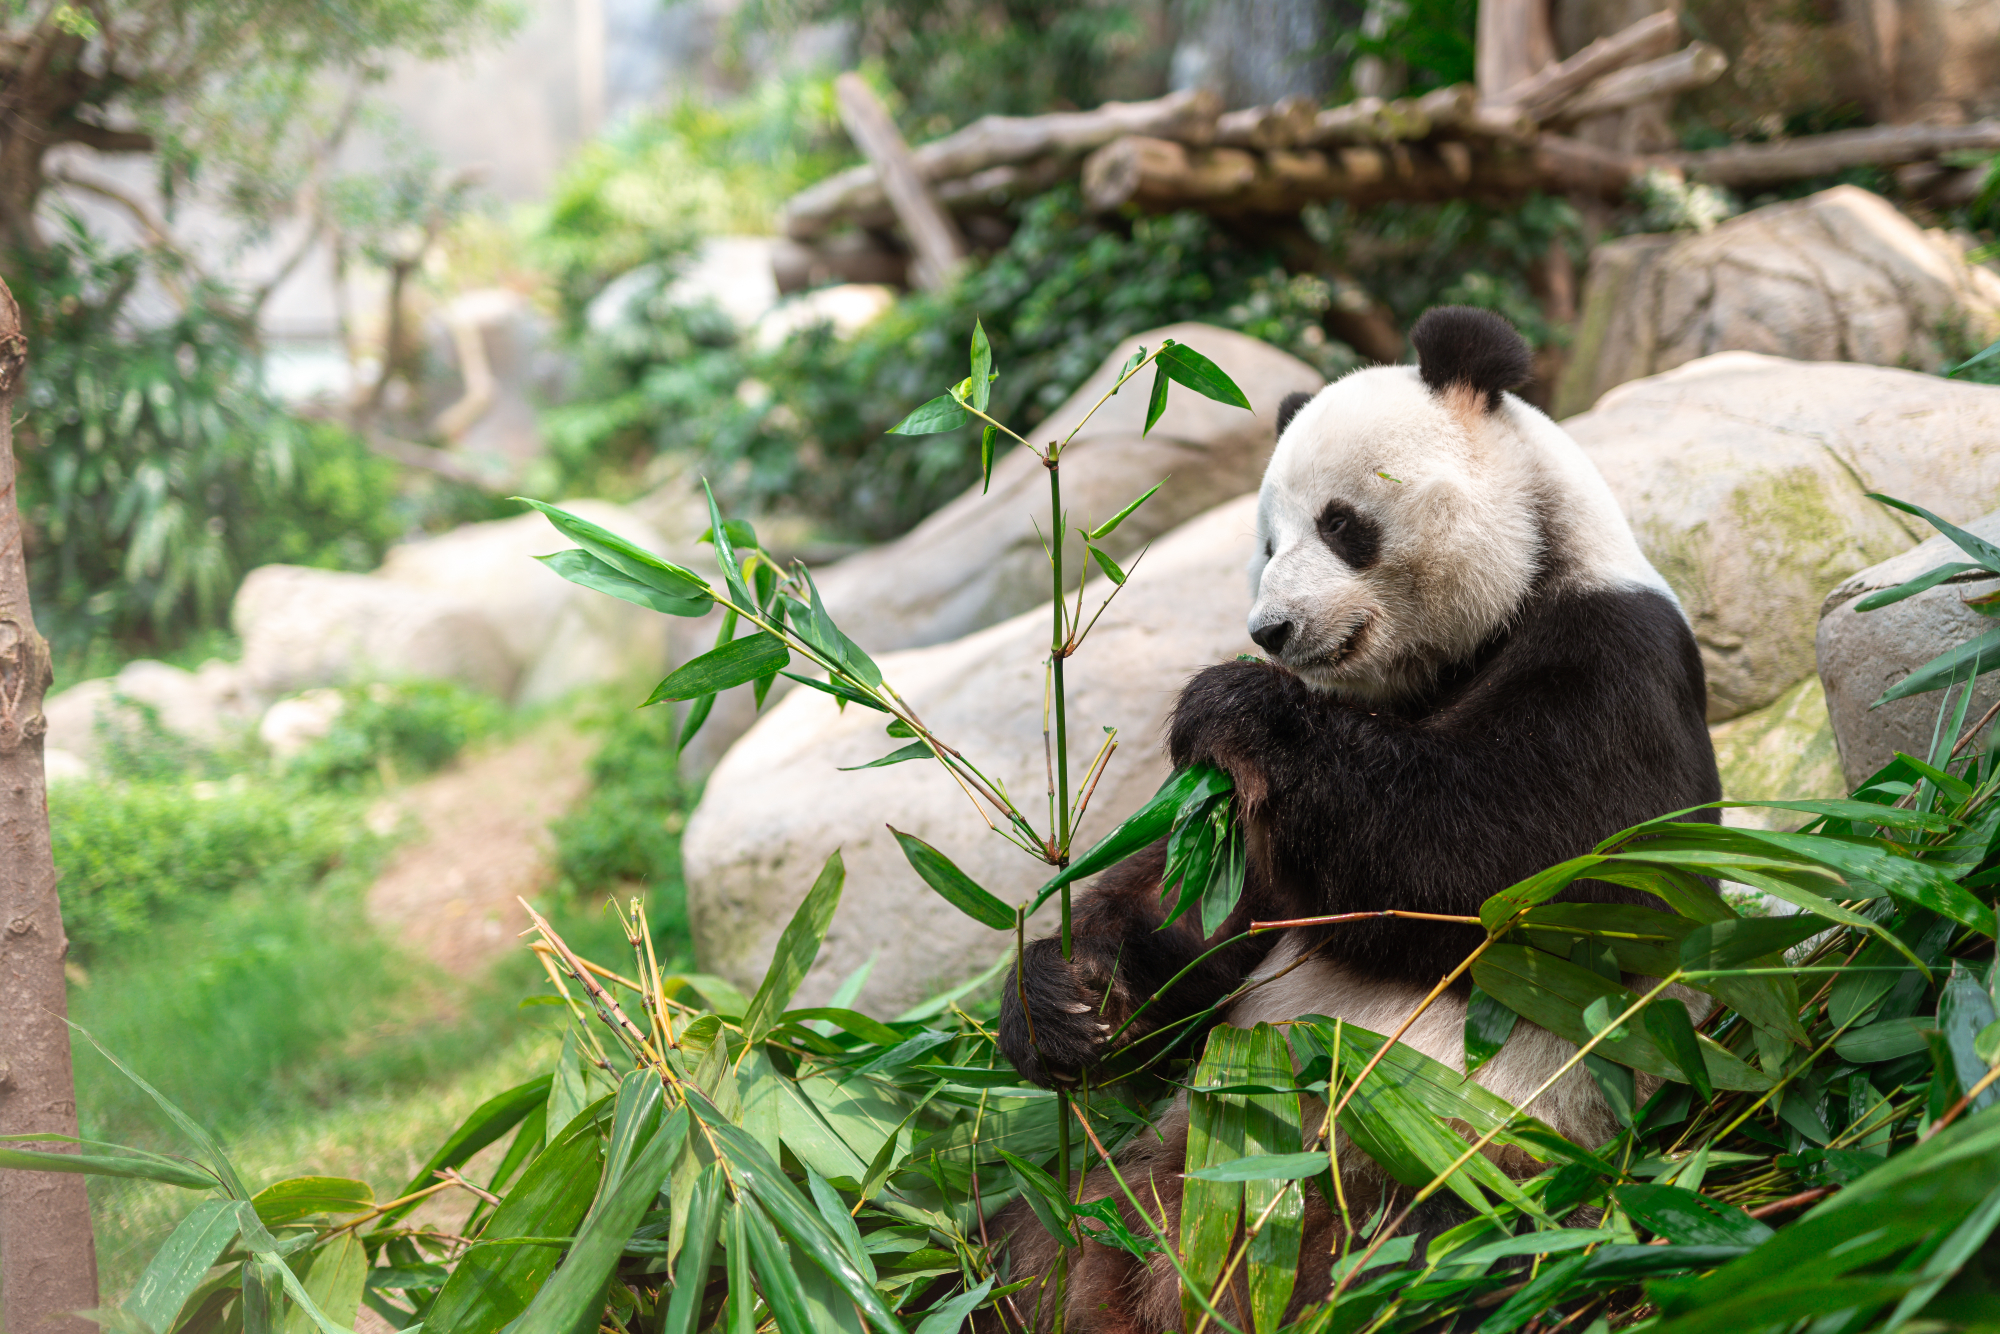 https://media.oceanpark.com.hk/files/s3fs-public/giant-panda-discovery-banner_0.jpg